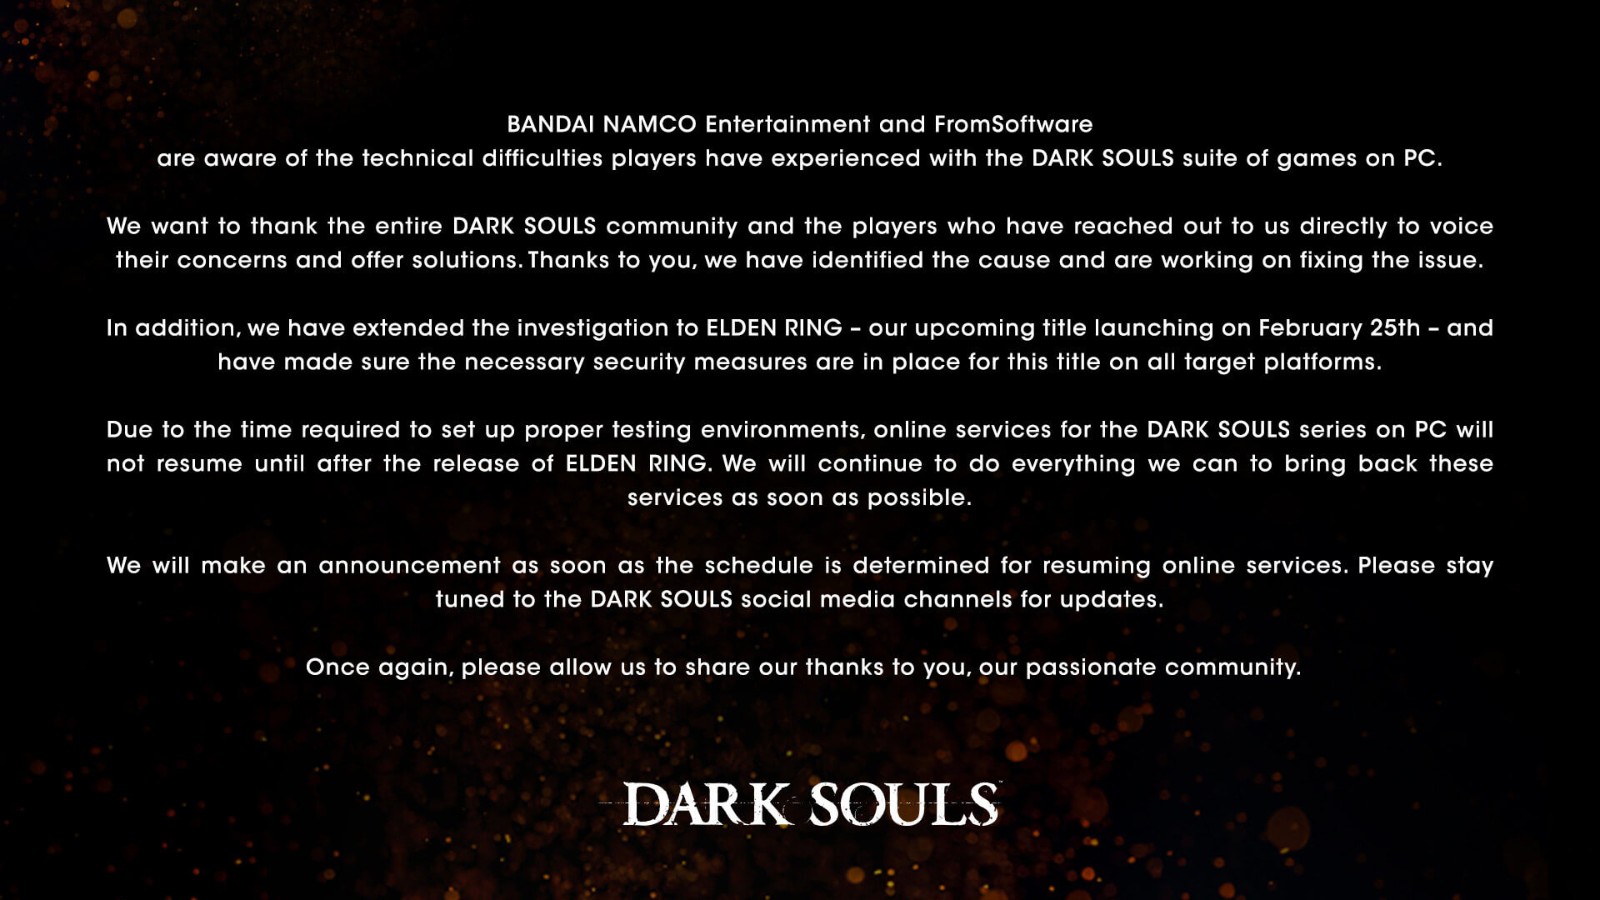 《黑暗之魂》在线服务器将在《艾尔登法环》发售后恢复